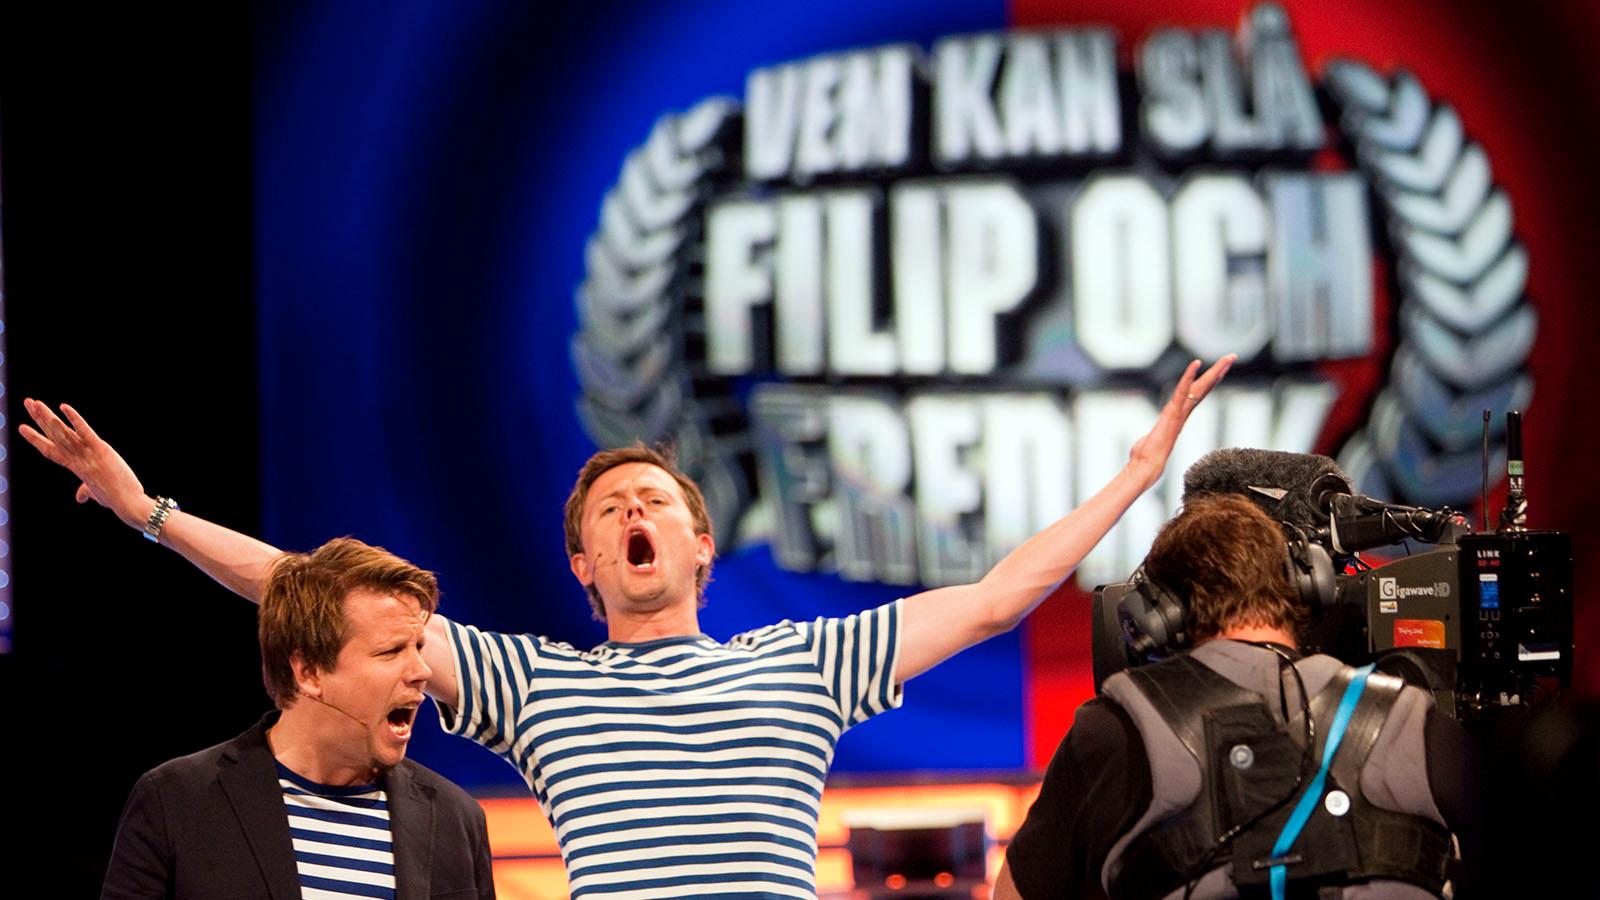 ”Vem kan slå Filip & Fredrik” gick mellan 2008 och 2012.